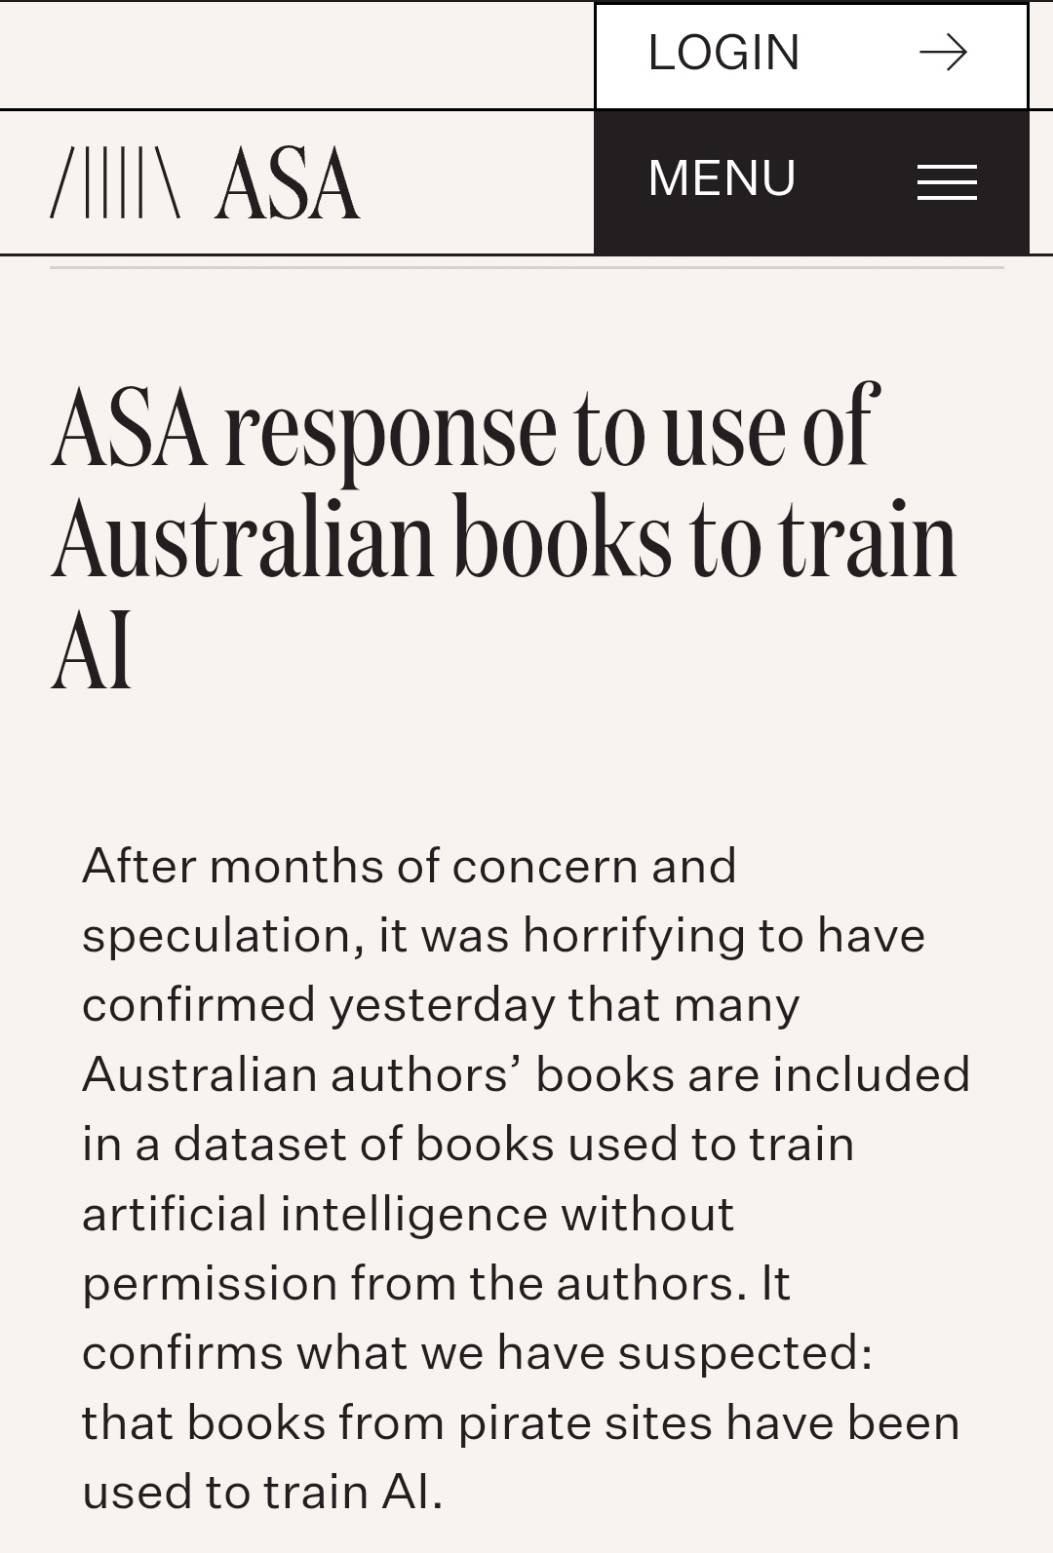 澳洲作家協會9月28日發聲明表示,將與美國作家協會等各國作家組織一同抗議AI侵犯著作權的行為.(澳洲作家協會官網)